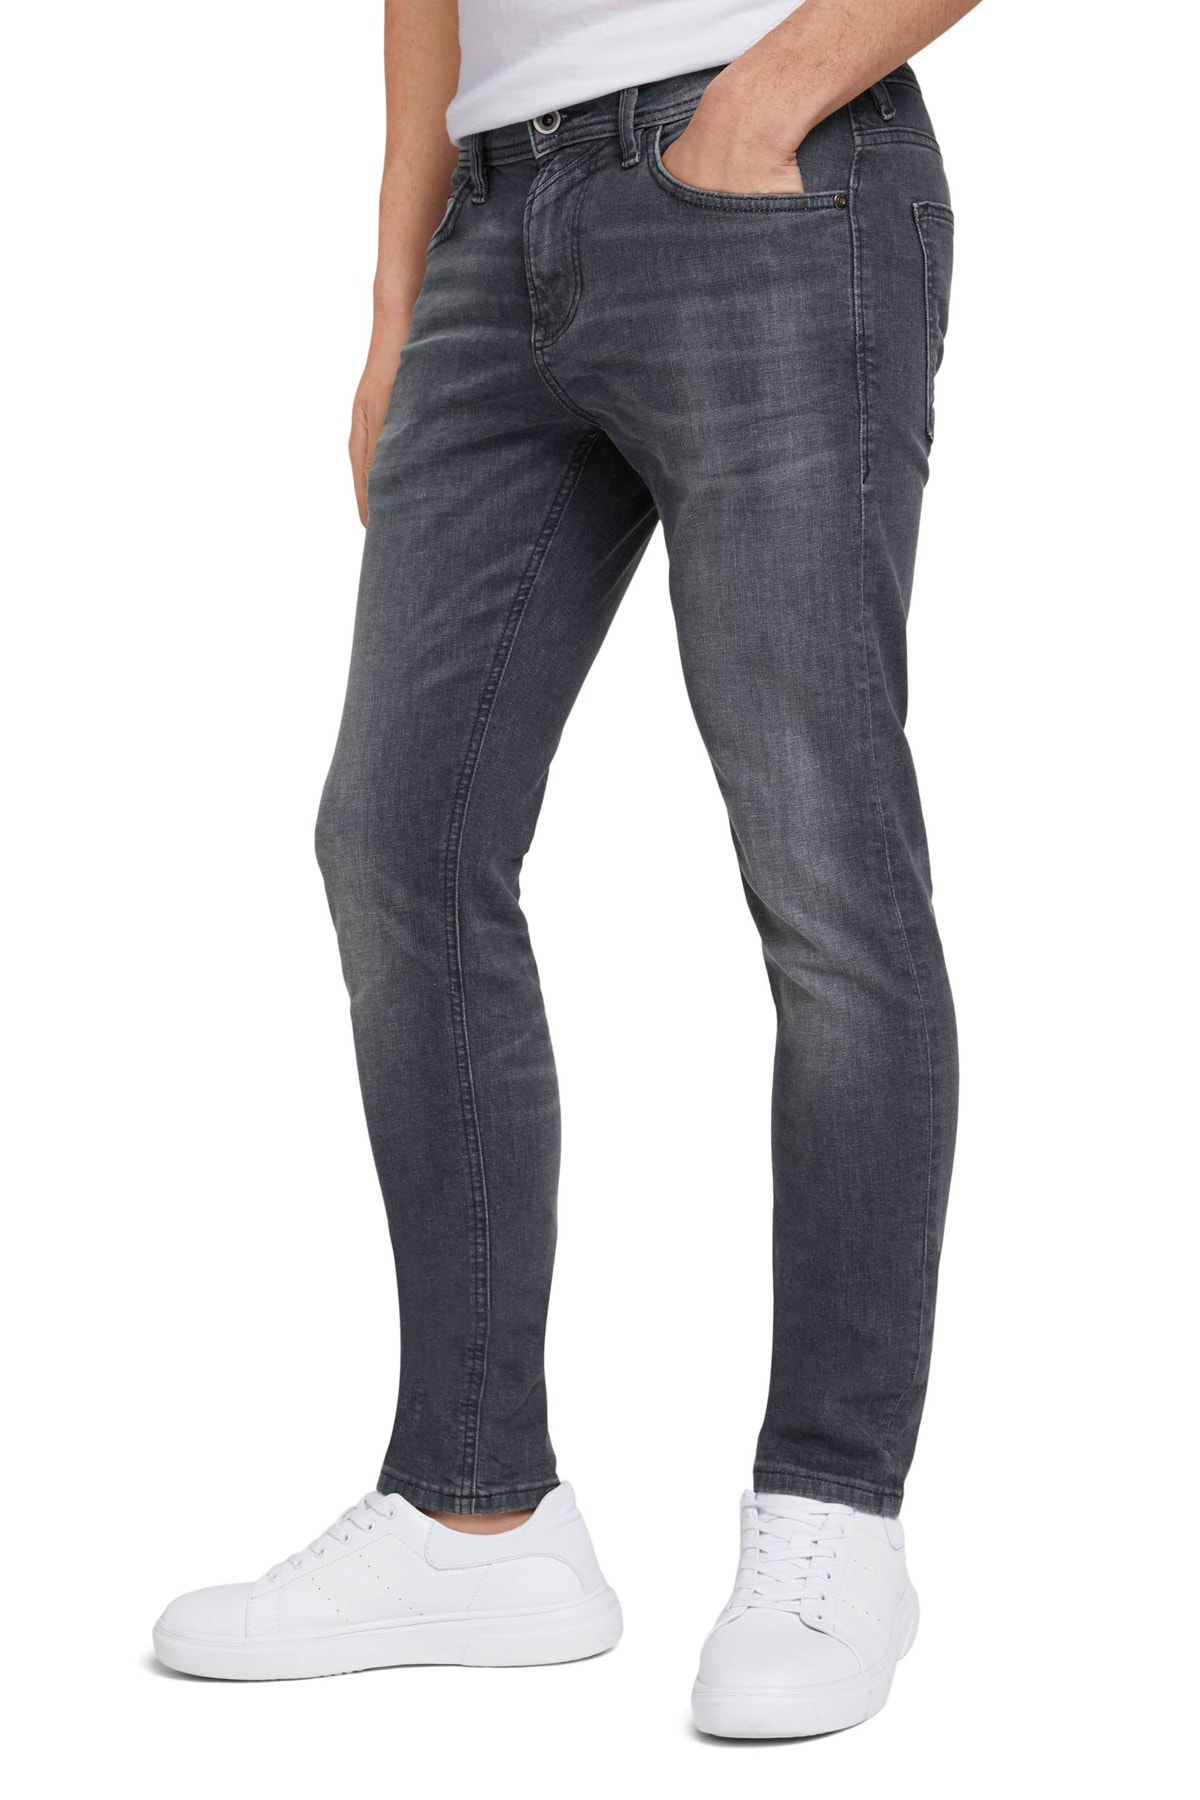 Джинсы - Серые - Скинни Tom Tailor Denim, серый джинсы серые широкие штанины tom tailor denim серый